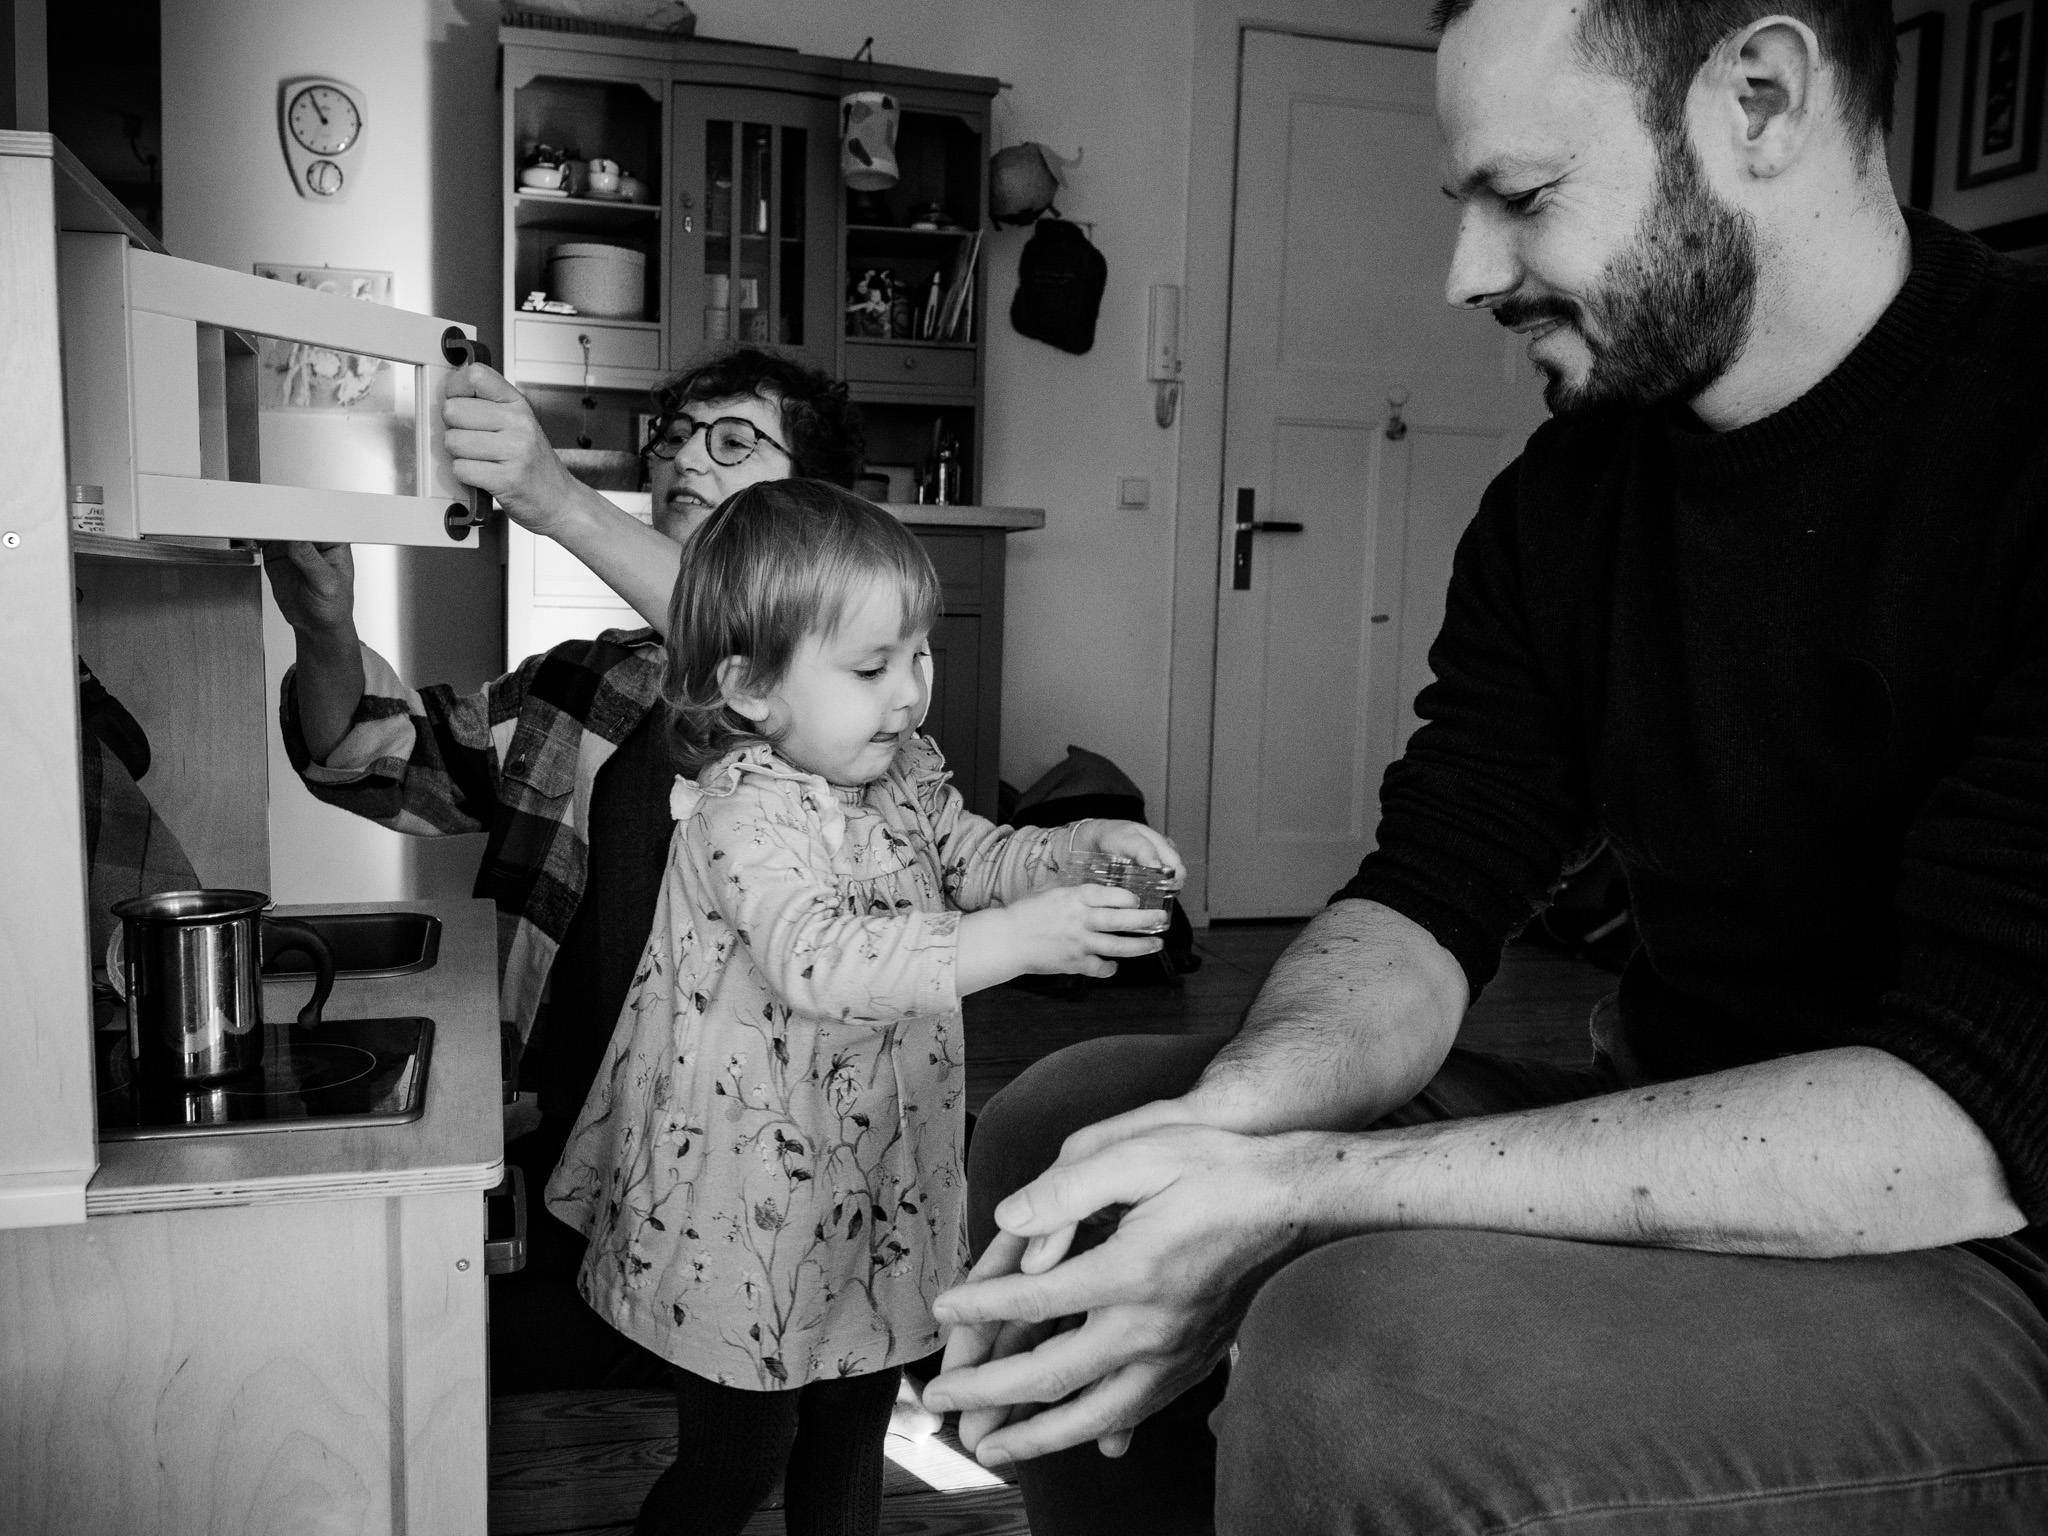 Familienreportage: Vater, Mutter und ein kleines Mädchen spielen in einer Spielküche zuhause